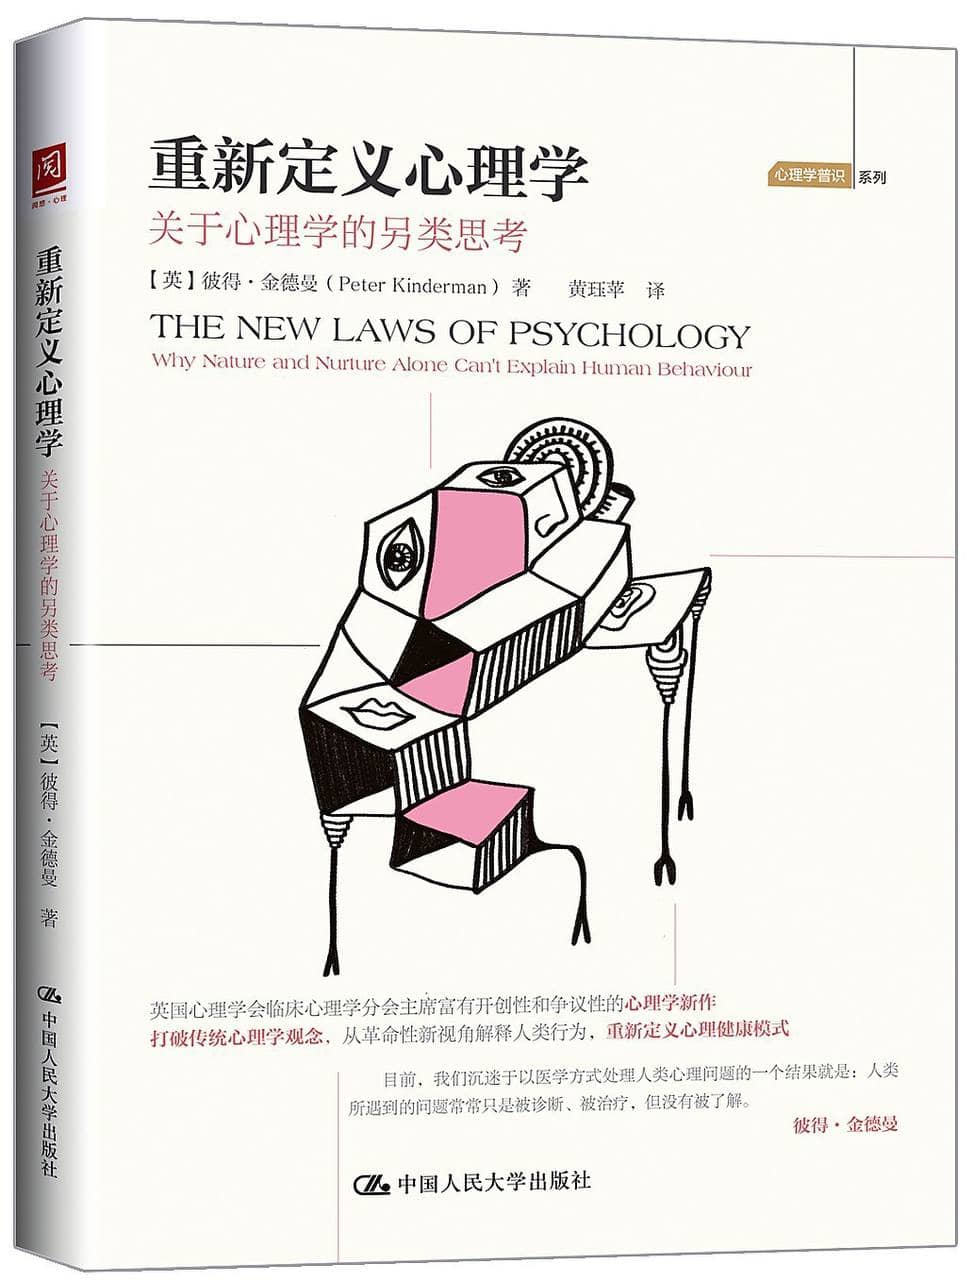 重新定义心理学：关于心理学的另类思考  [EPUB &amp; MOBI &amp; PDF 电子书]